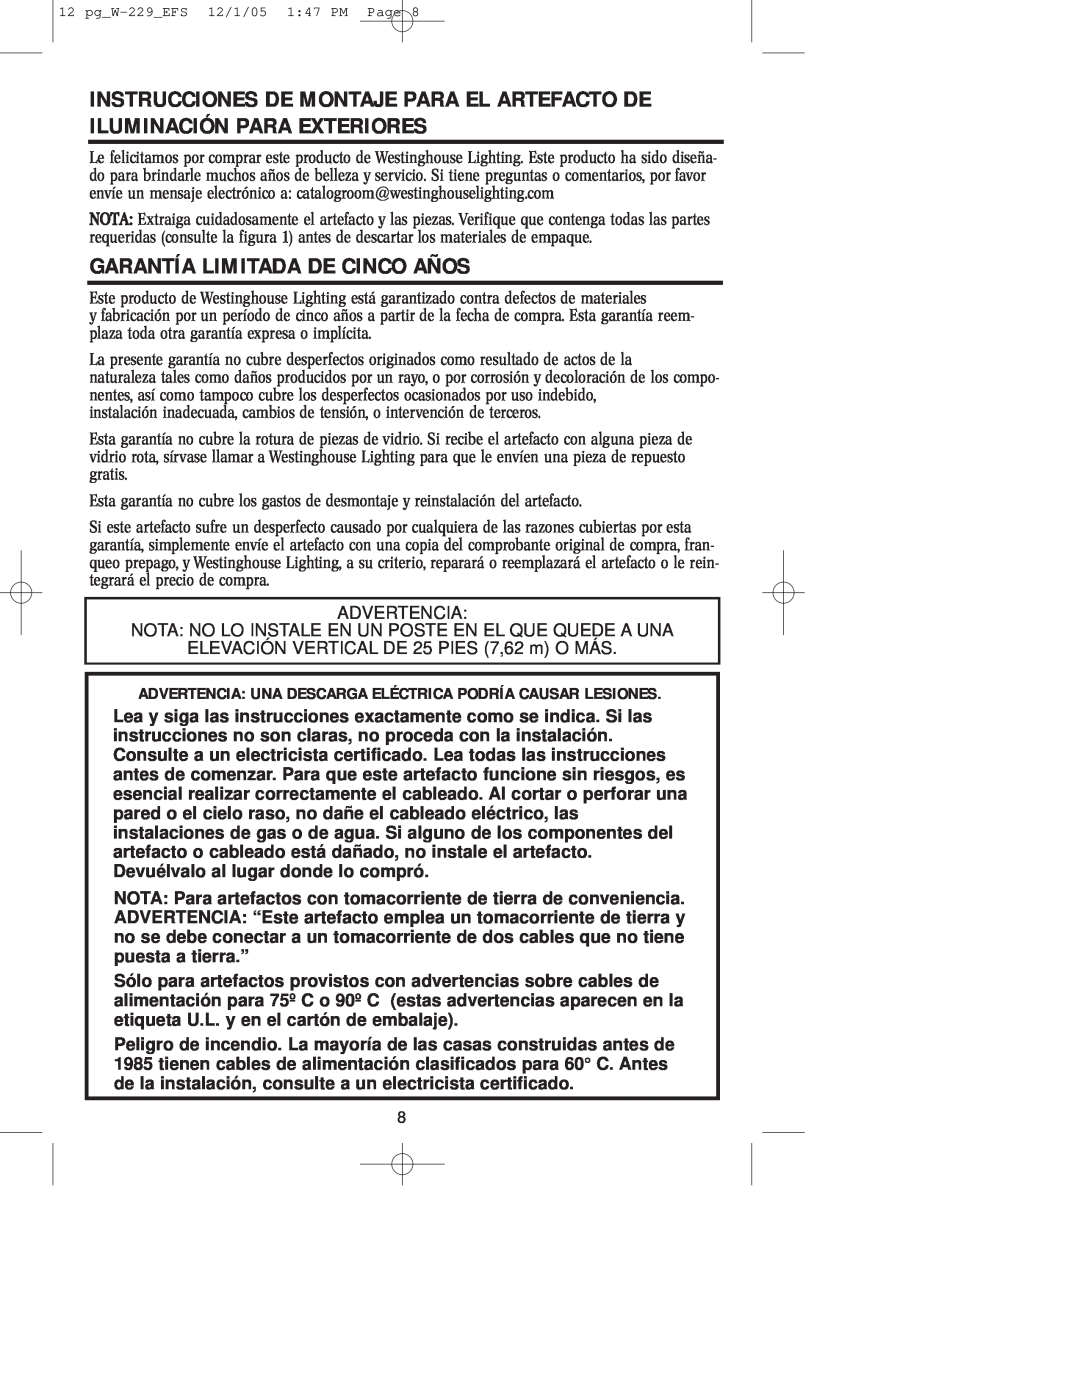 Westinghouse W-229 owner manual Garantía Limitada De Cinco Años, Advertencia 